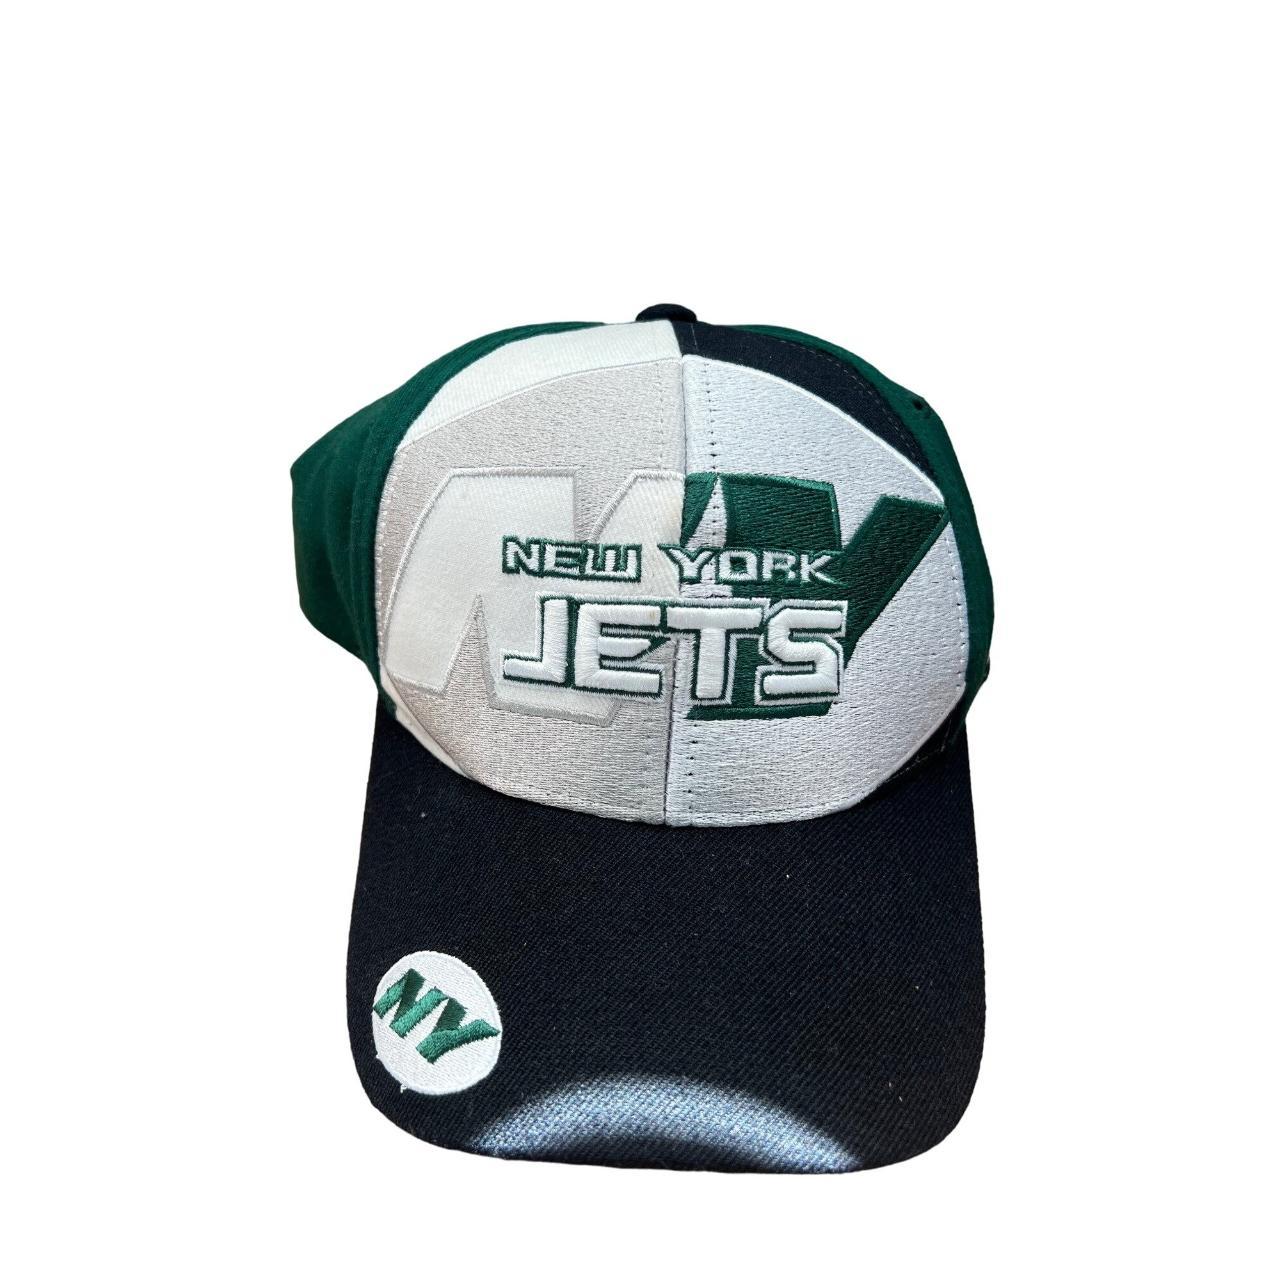 New York Jets NFL Football Hat Cap Men's Green White - Depop